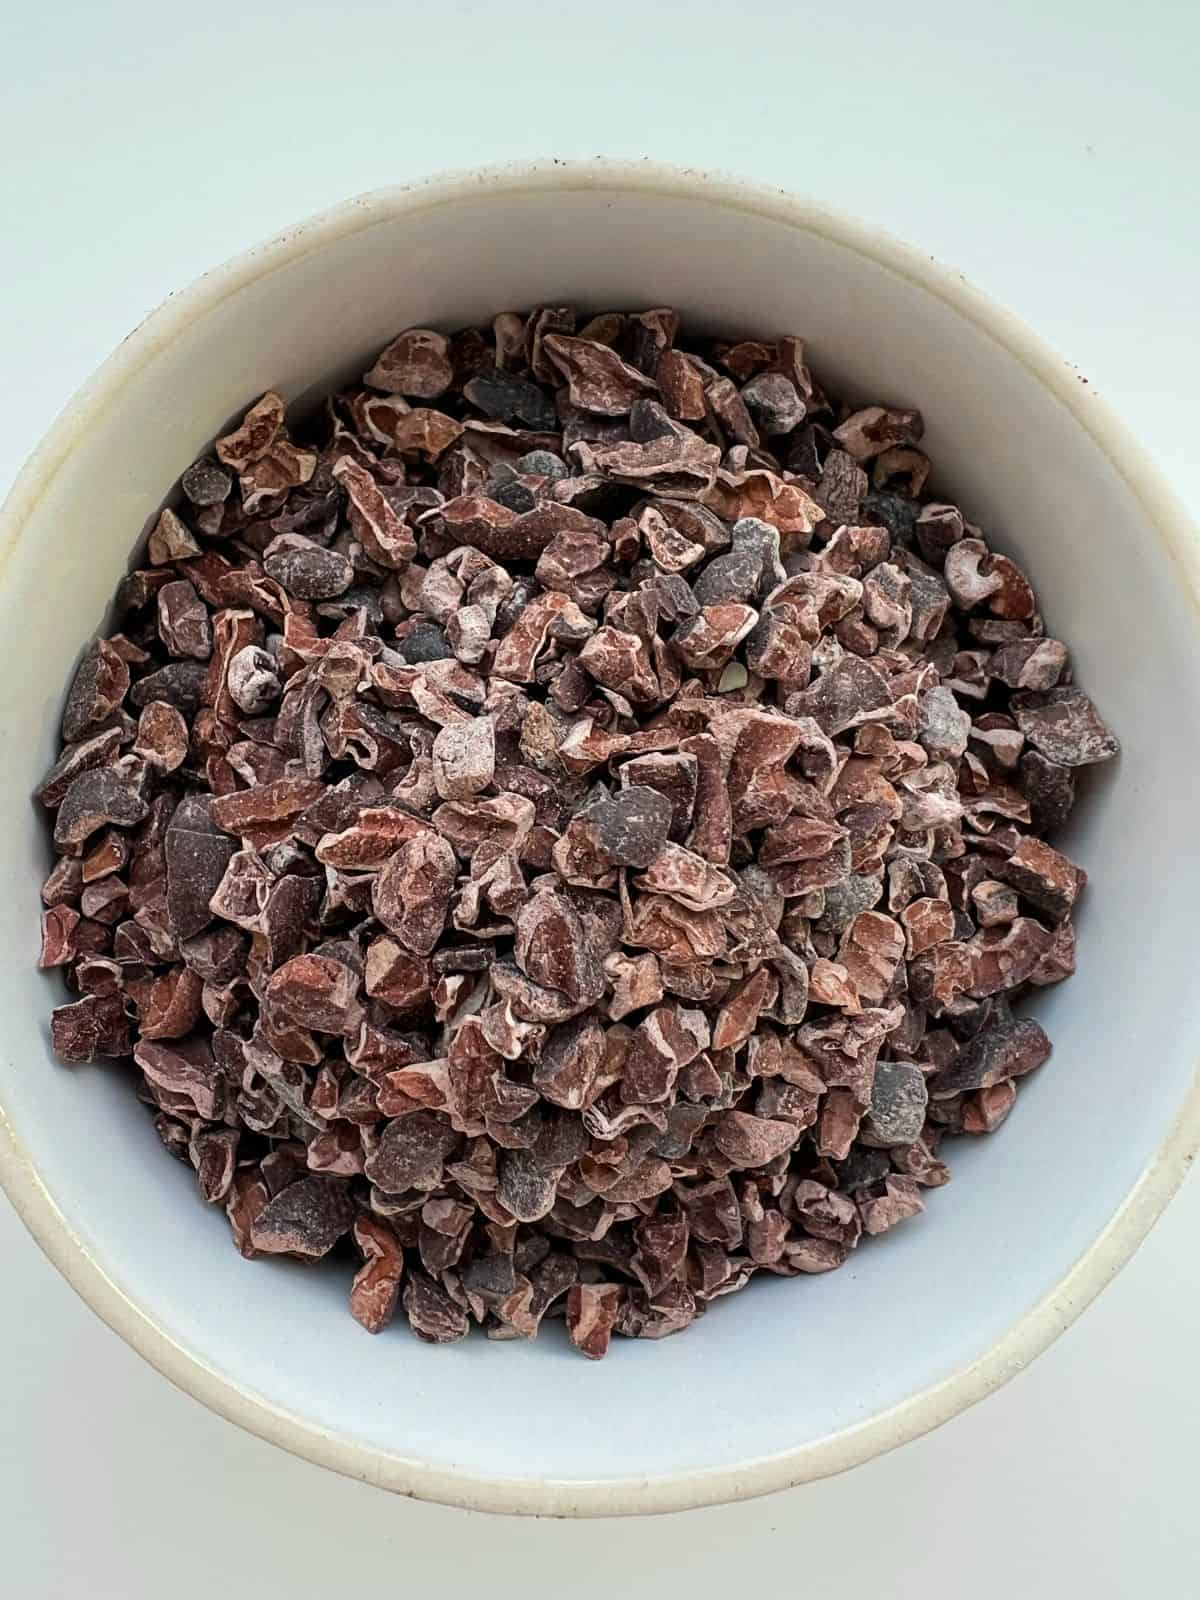 A white ceramic bowl contains cacao nibs.